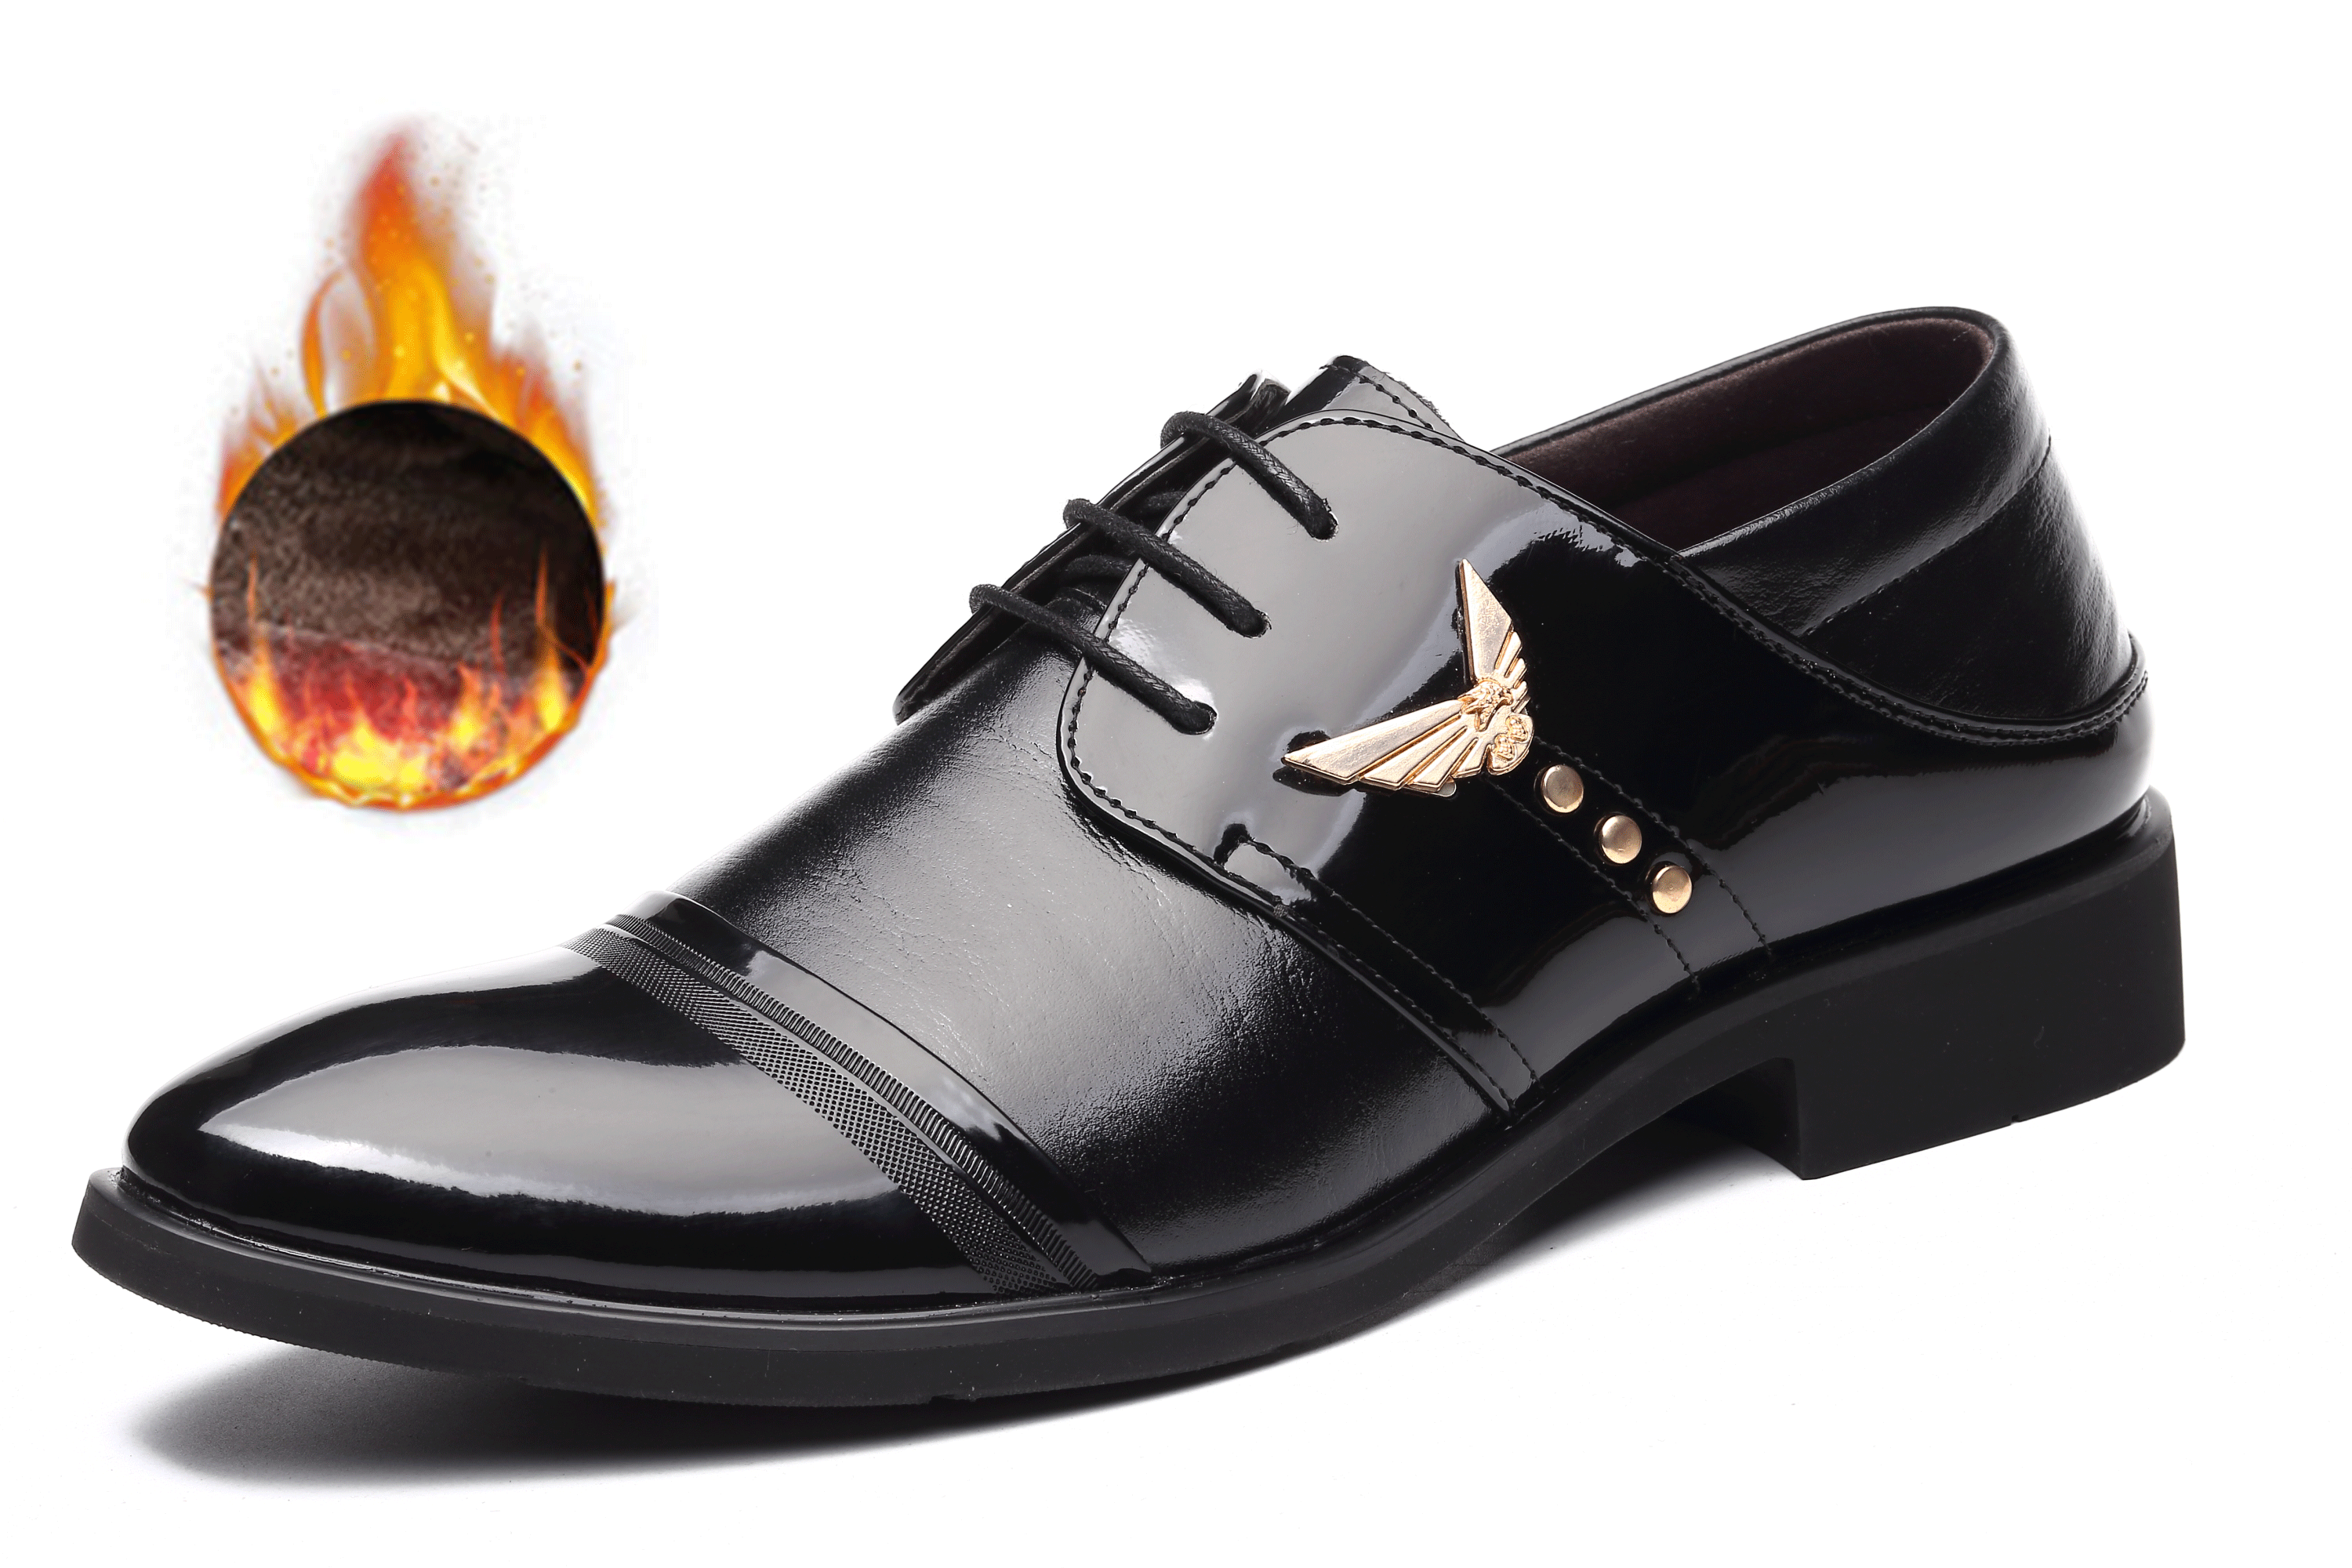 Braune Leder Schuhe Herren Lederschuhe Sandbeige, Festliche Schuhe Herren